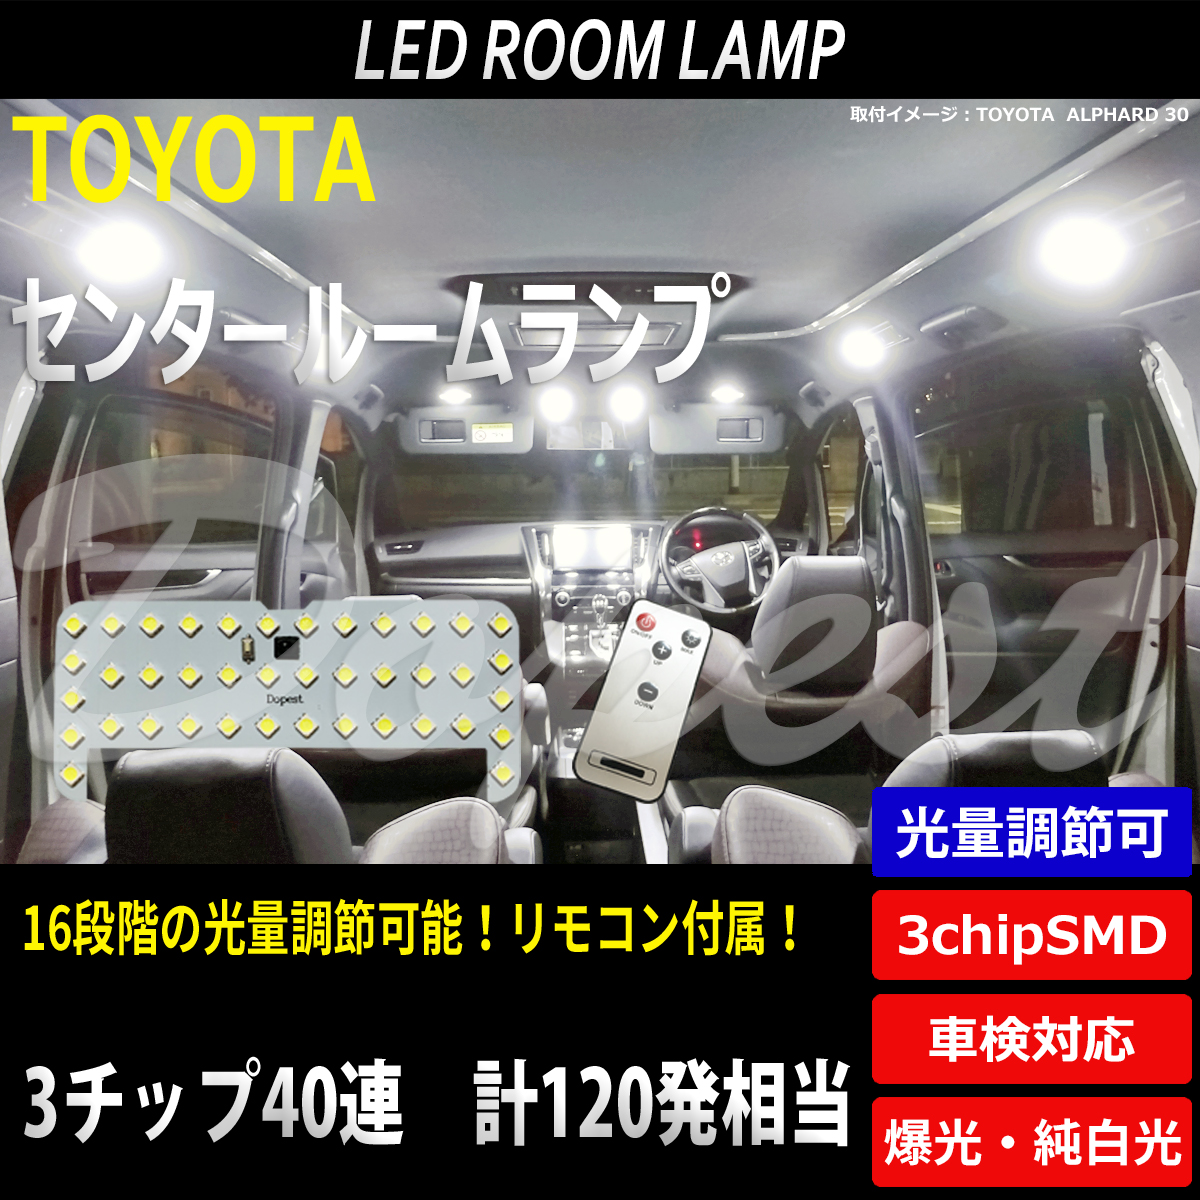 期間限定価格 LEDルームランプ トヨタ車専用 調光式 車内 室内